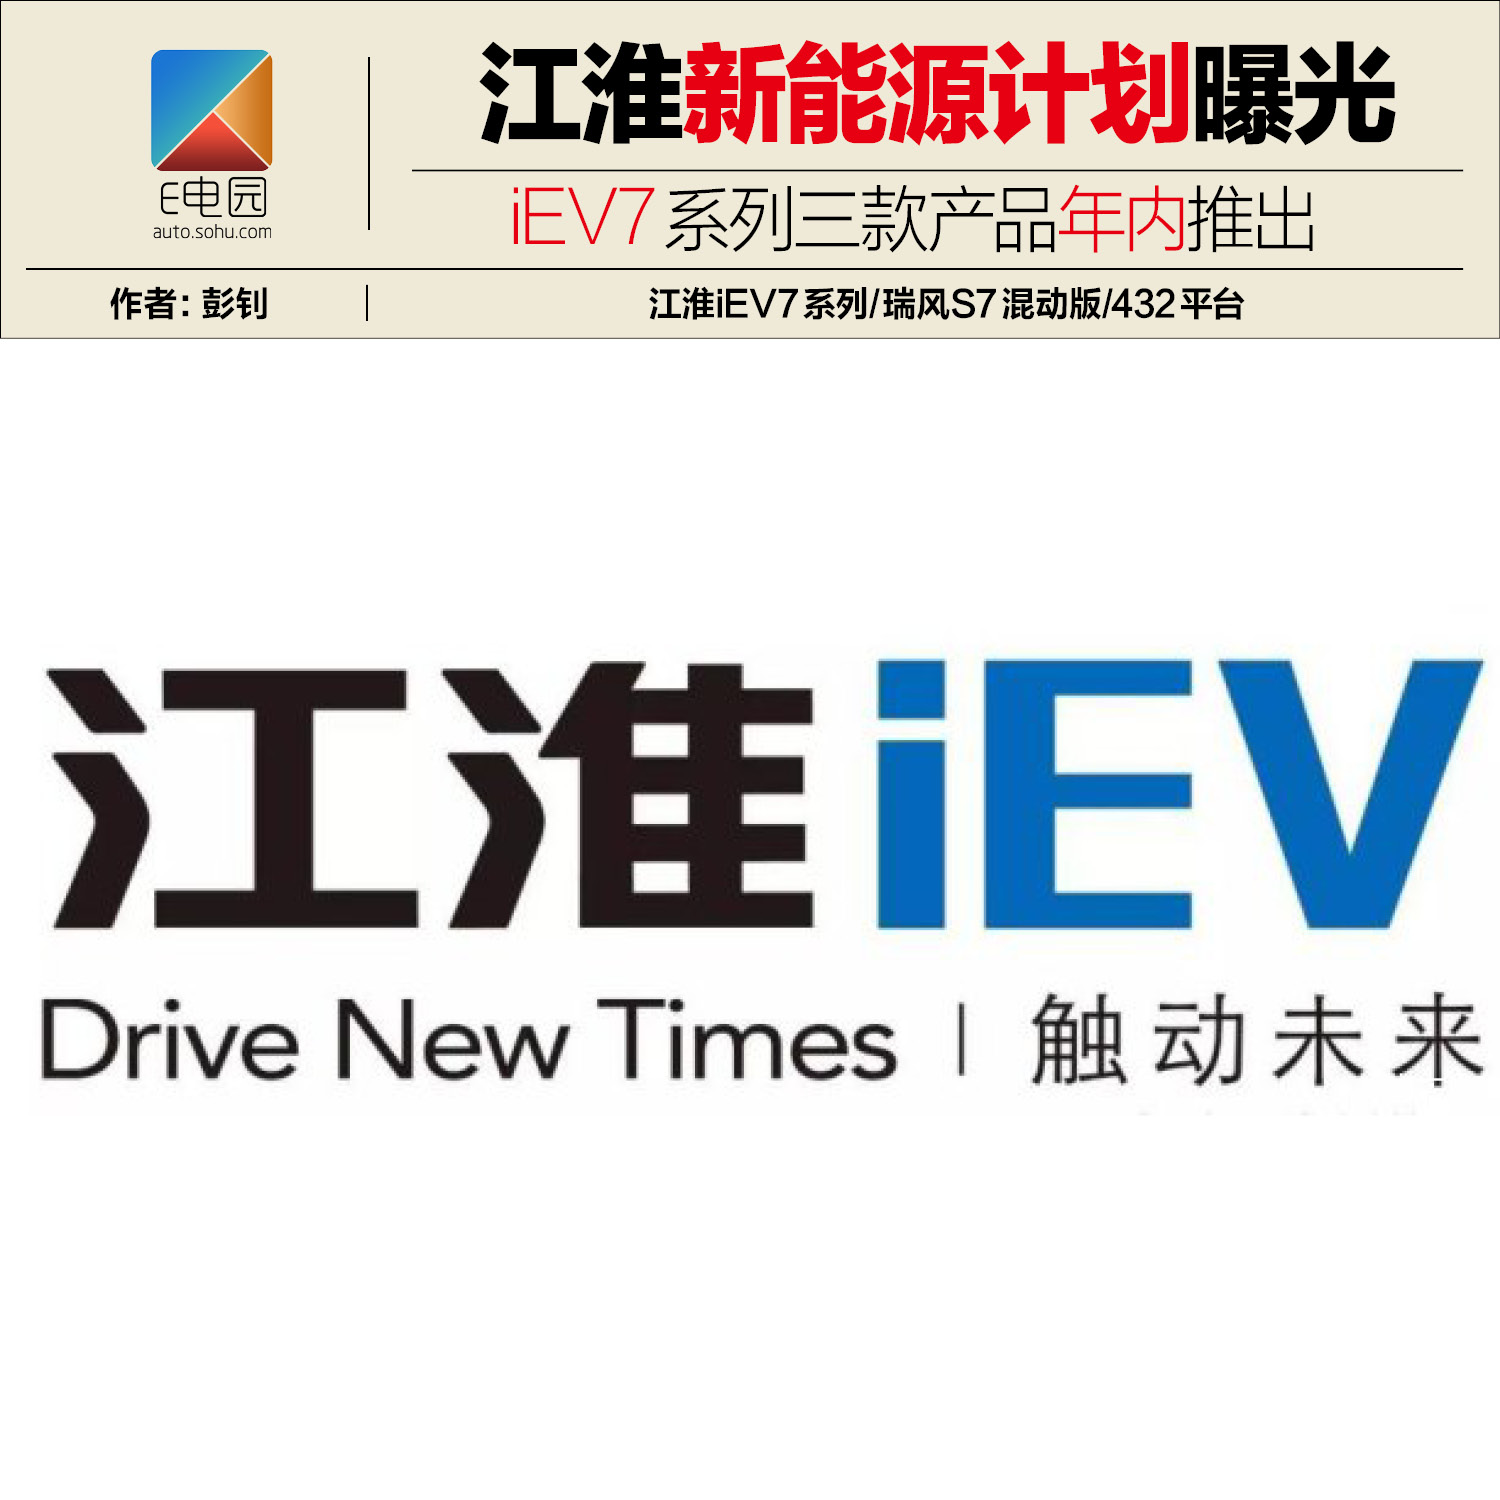 iev7系列三款产品年内推出 江淮新能源计划曝光